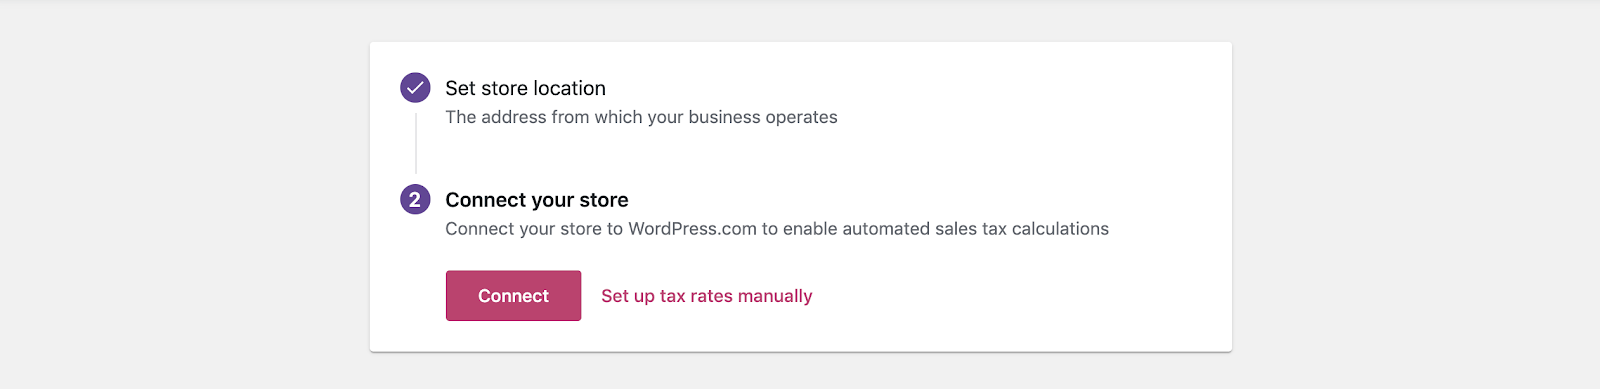 Conectar a sua loja com o WordPress.com